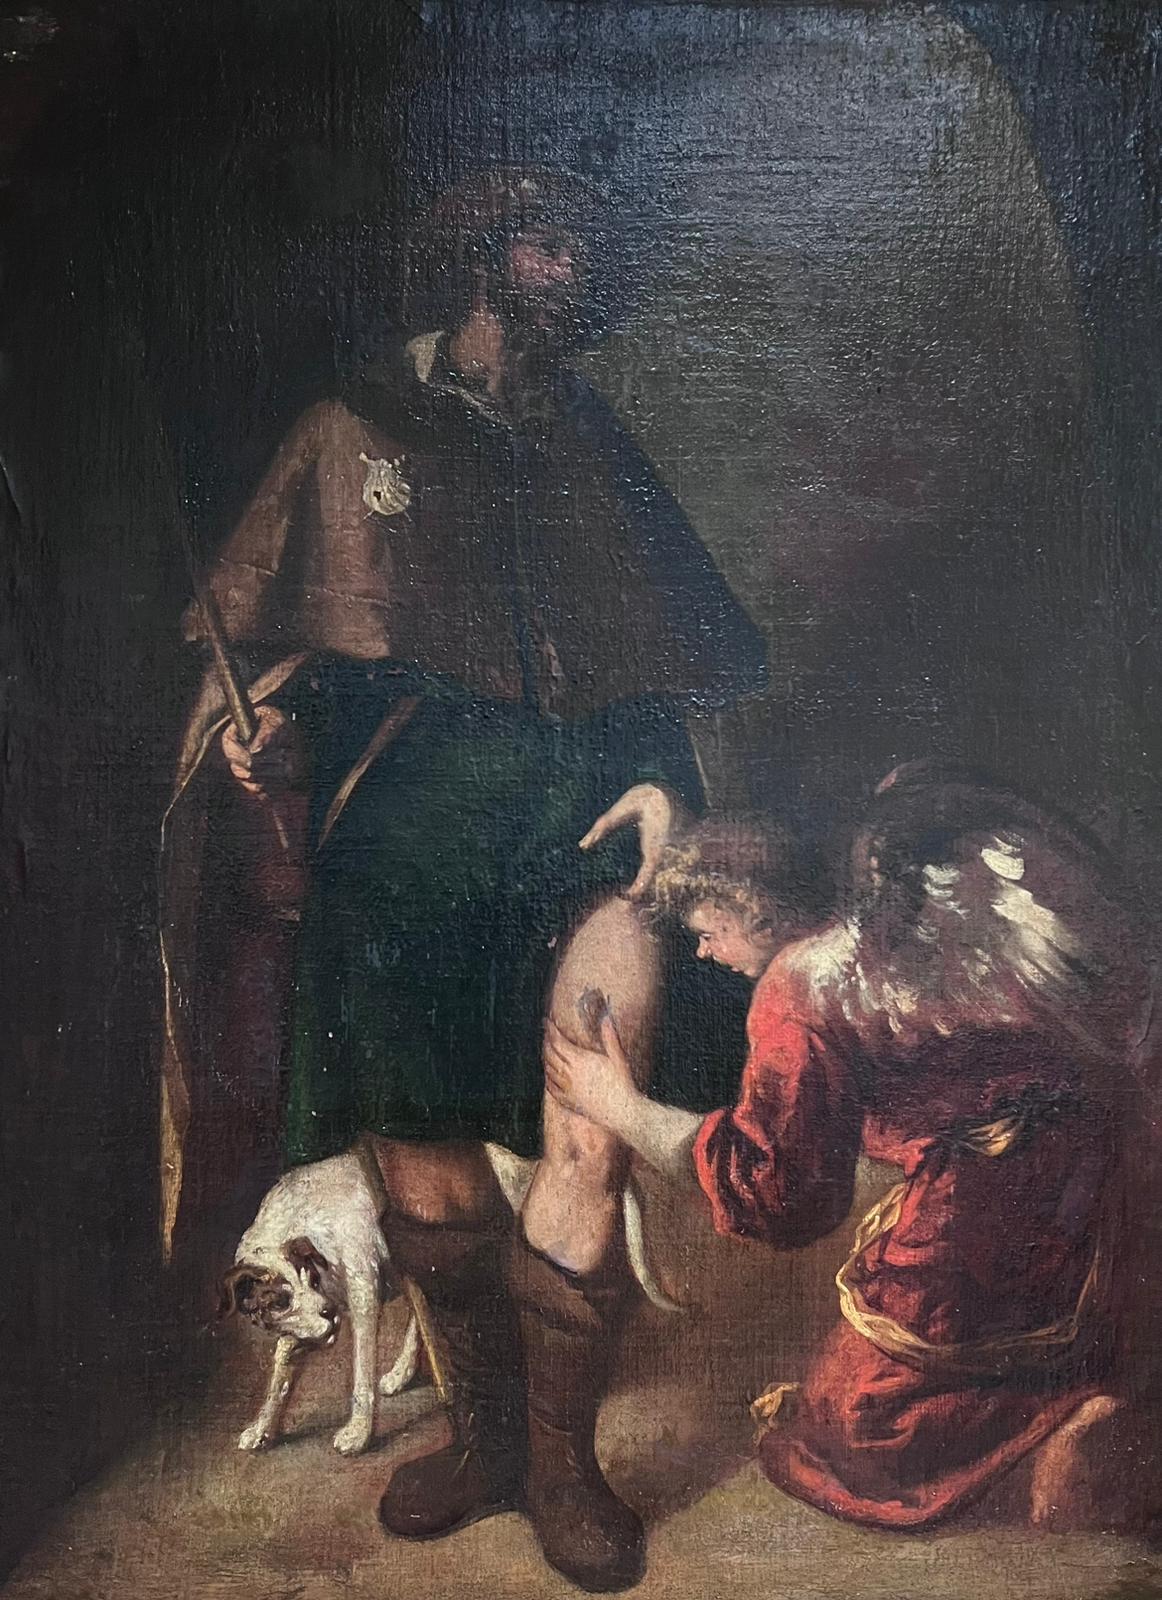 Großes spanisches Ölgemälde eines alten Meisters aus dem 17. Jahrhundert, verwundeter Pilger mit Engel, Ölgemälde – Painting von Spanish Old Master